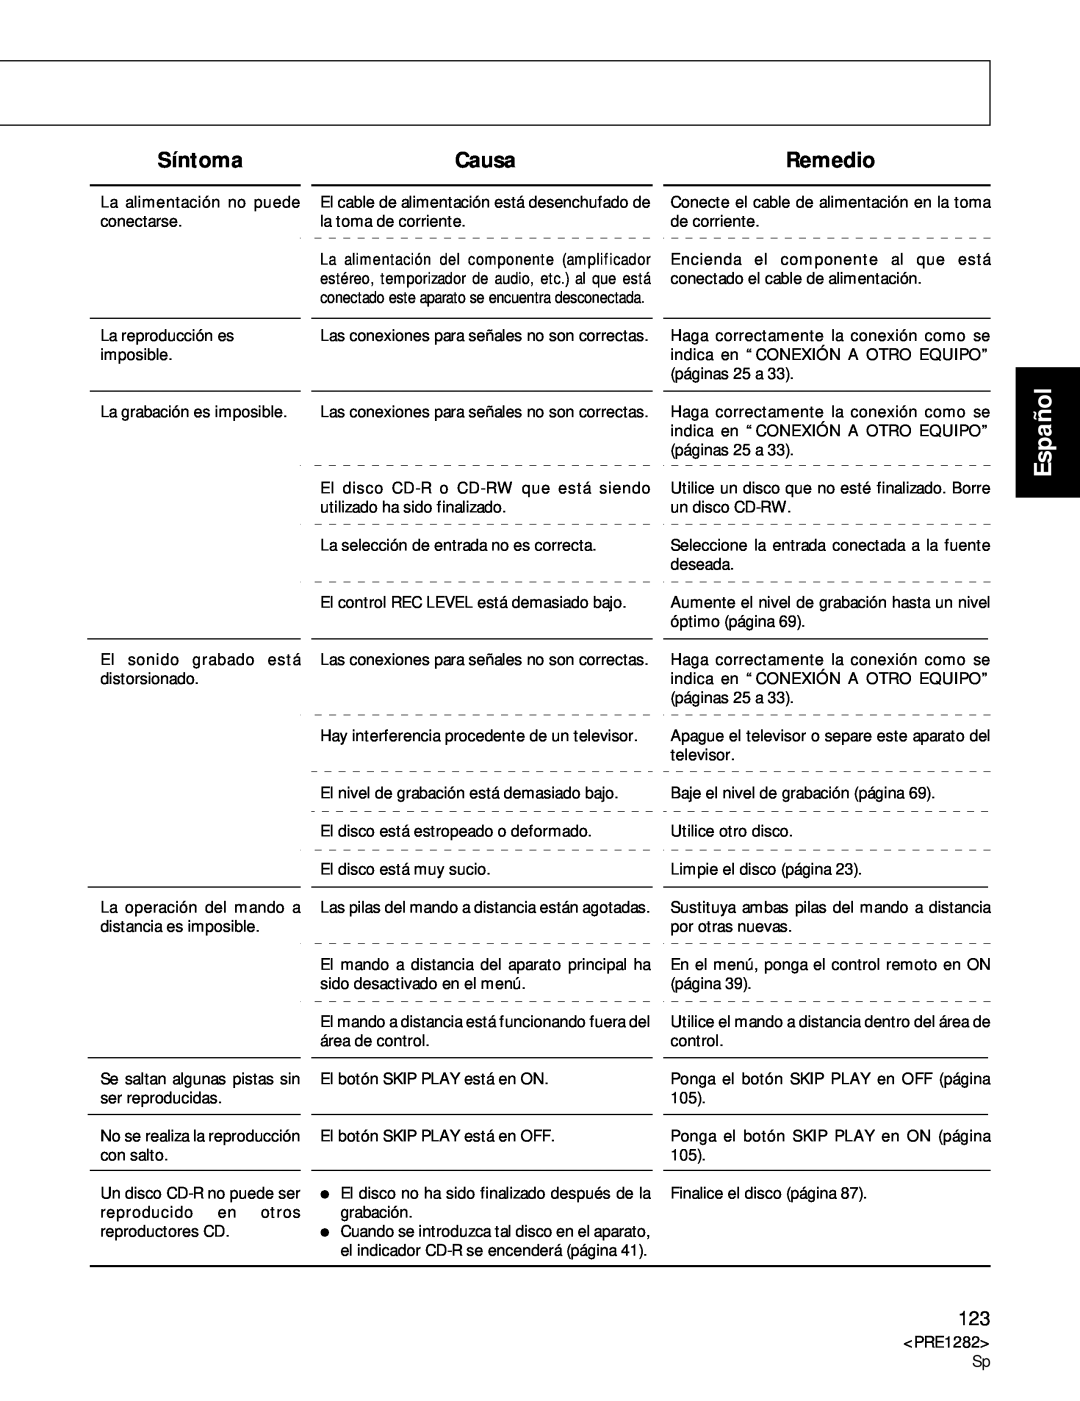 Americana Appliances CDR-850 manual Síntoma, Causa, Remedio, Español 